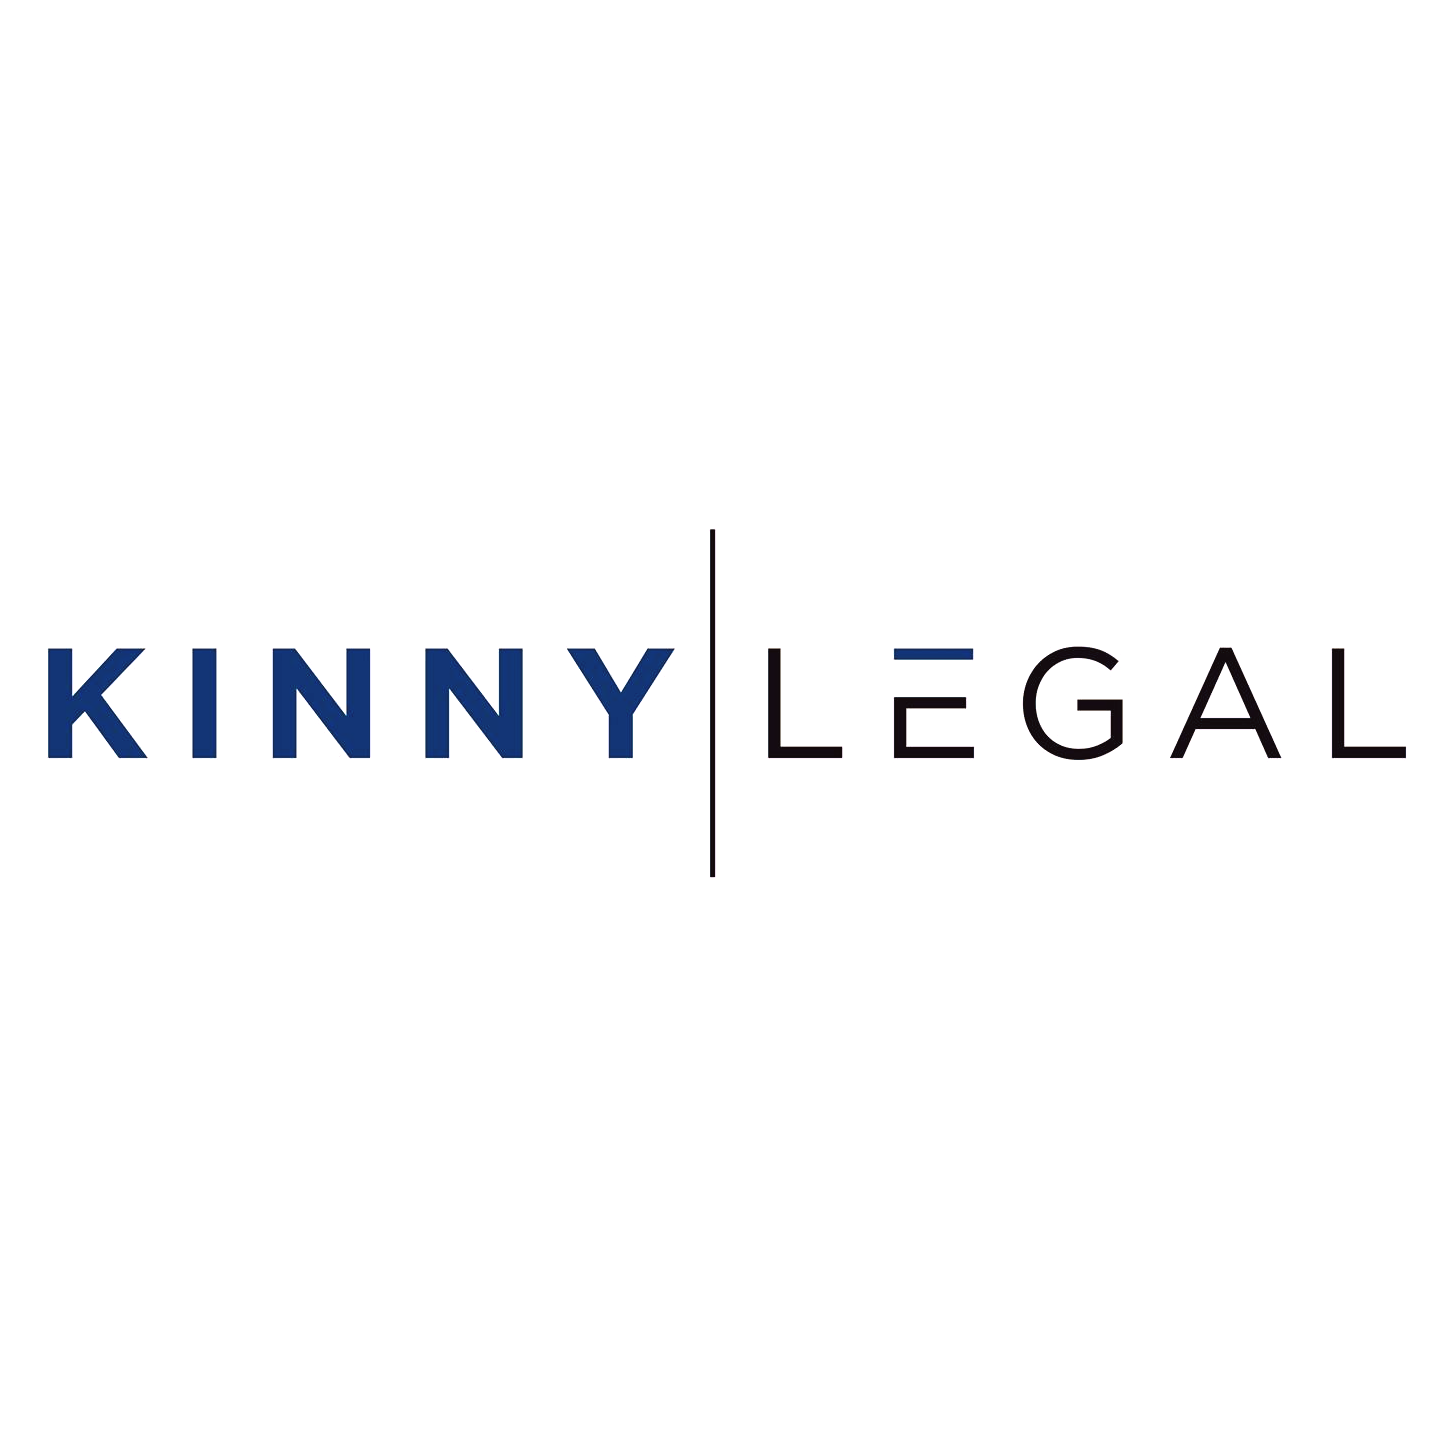 Company logo of Kinny Legal